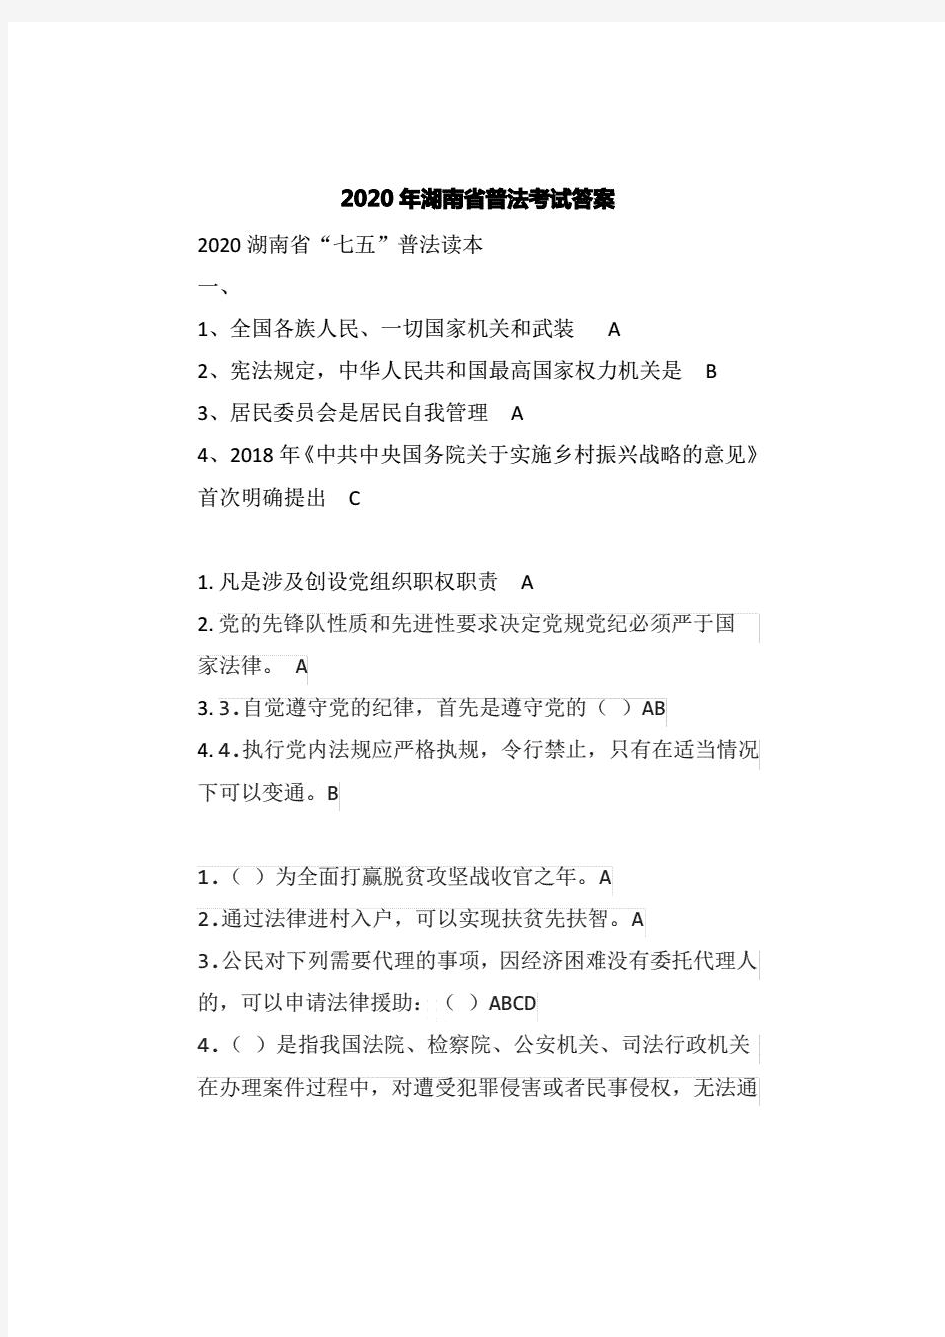 2020年湖南省普法考试答案-如法网 